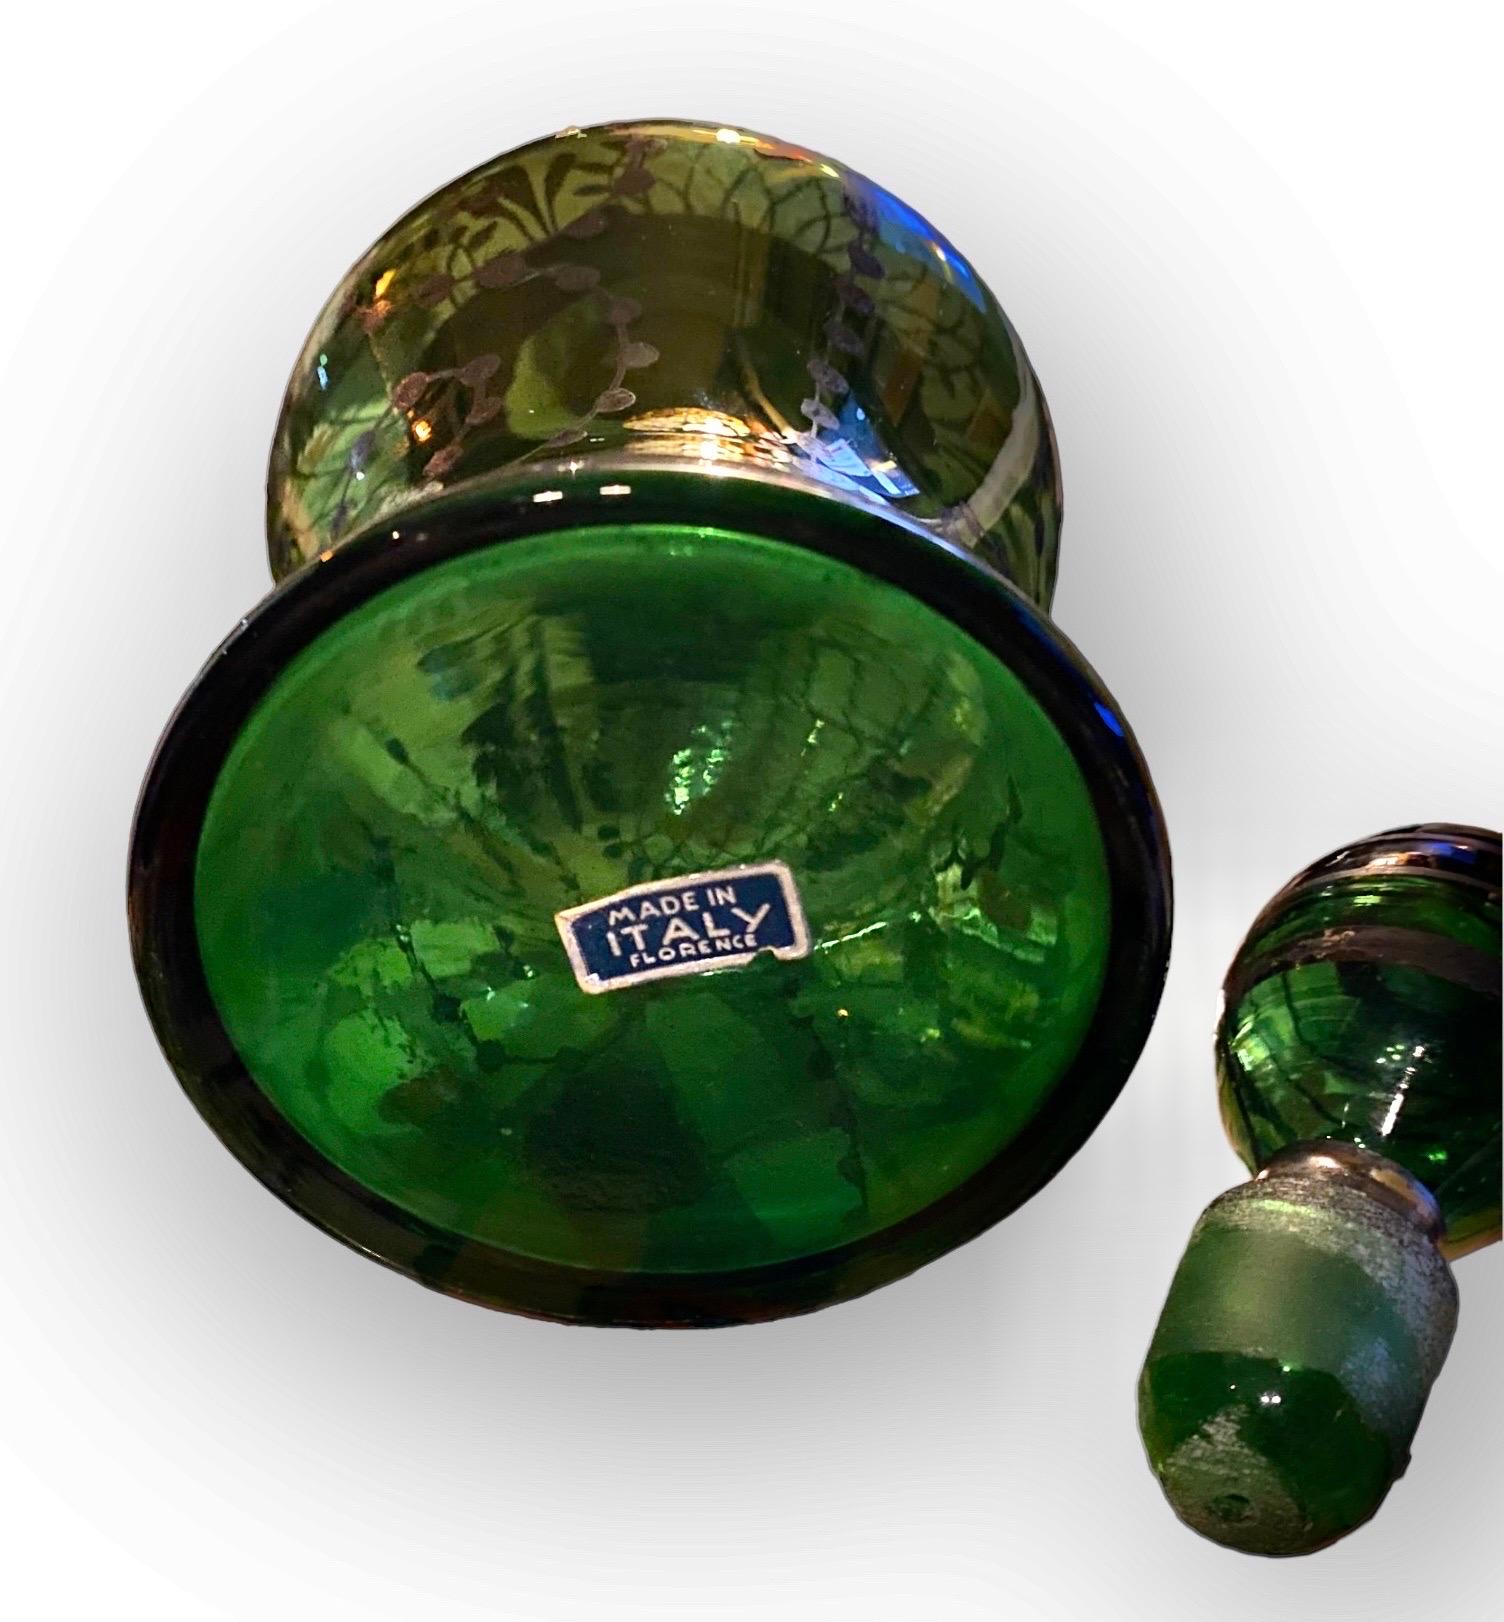 Charmante carafe en verre soufflé à la main et en argent datant des années 1920, accompagnée de quatre verres dans de jolies nuances de vert émeraude, avec des motifs en argent et des rebords en argent. Le bouchon de terre avec des bandes d'argent. 